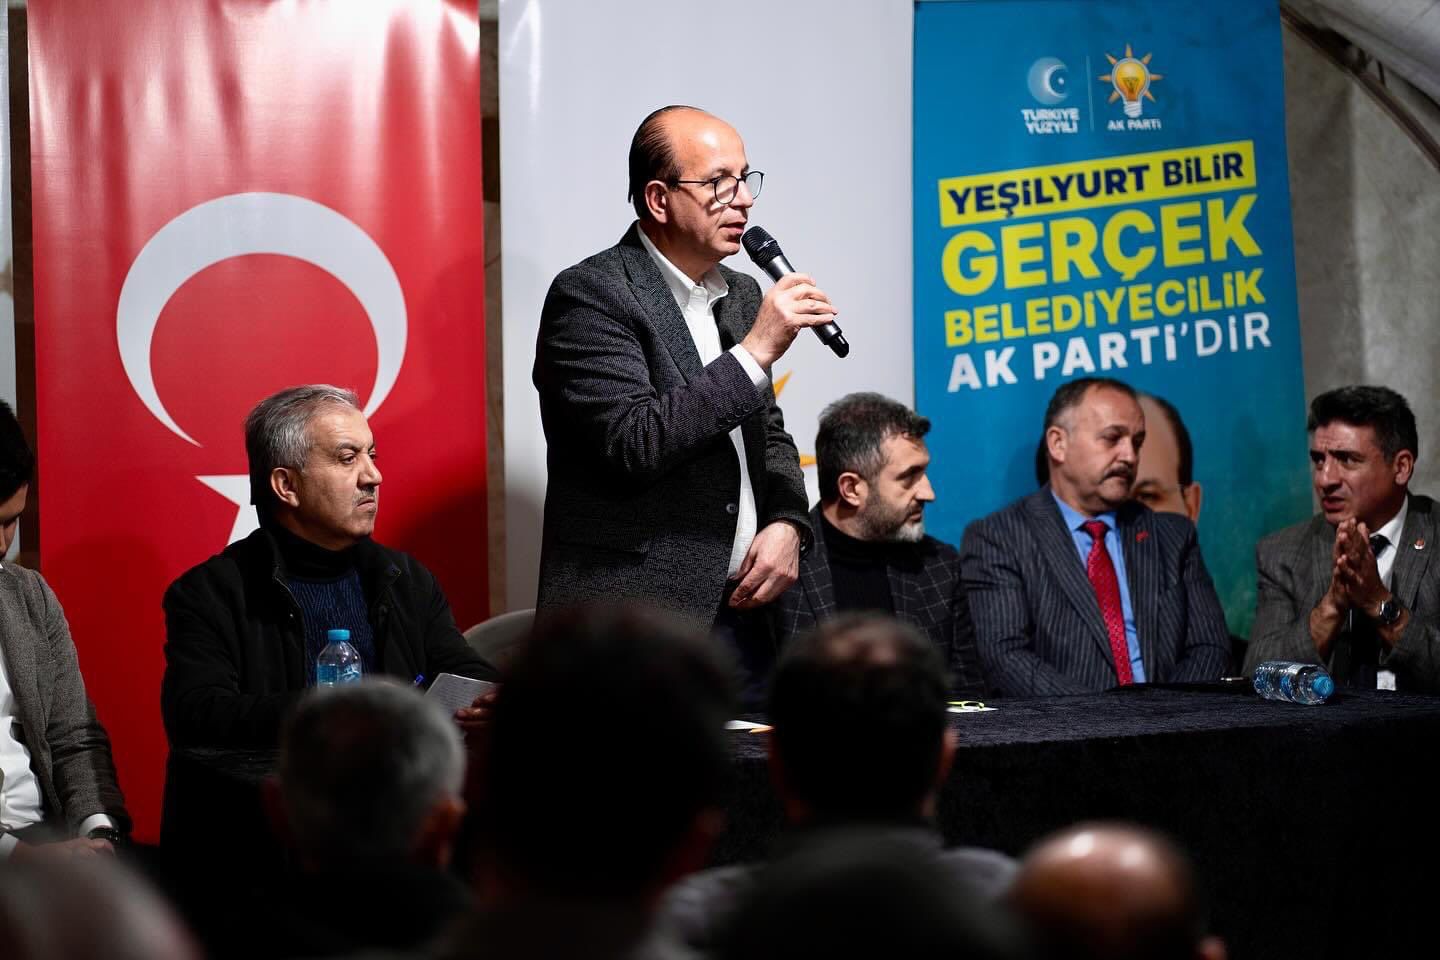 AK Parti Yeşilyurt Belediye Başkan Adayı Prof. Dr. İlhan Geçit:“Bu şehirdeki binalardan tabutlar çıkmasına müsaade etmeyeceğiz